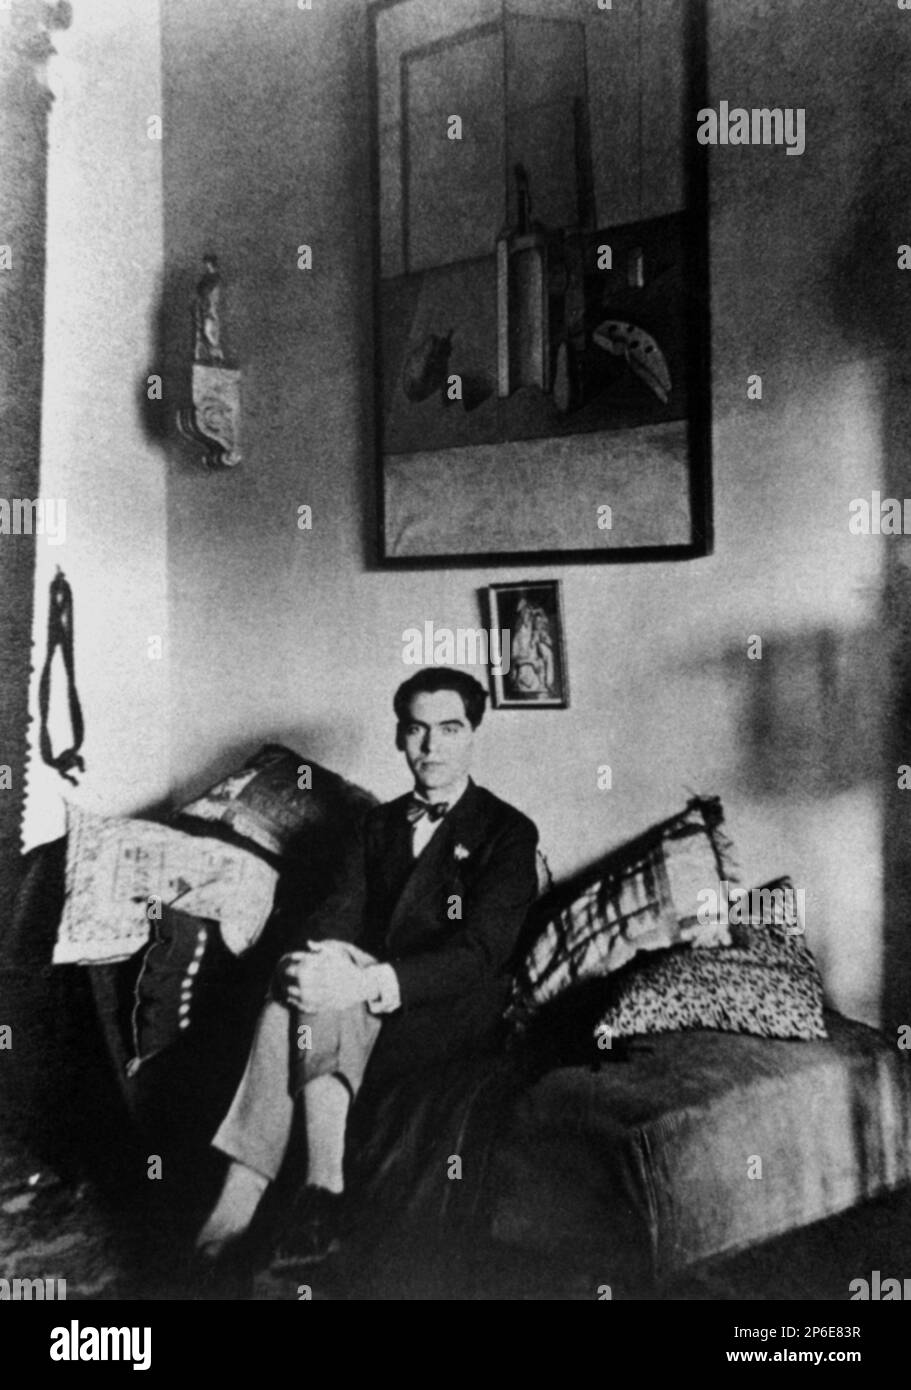 1925, Grenade, ESPAGNE : le poète espagnol FEDERICO GARCIA LORCA ( 1898 - 1936 ) âgé de 27 ans . Au mur une oeuvre de Salvador Dalì ( à l'époque son amant gay ). - POETA - POÉSIE - POÉSIE - LETTERATURA - LITTÉRATURE - letterato - GAY - homosexuel - Homosalité - Omosessualità - LGBT - Omosessuale - portrait - ritratto - Dalì - canapé - divano - letto - lit --- Archiexuvio GBB Banque D'Images